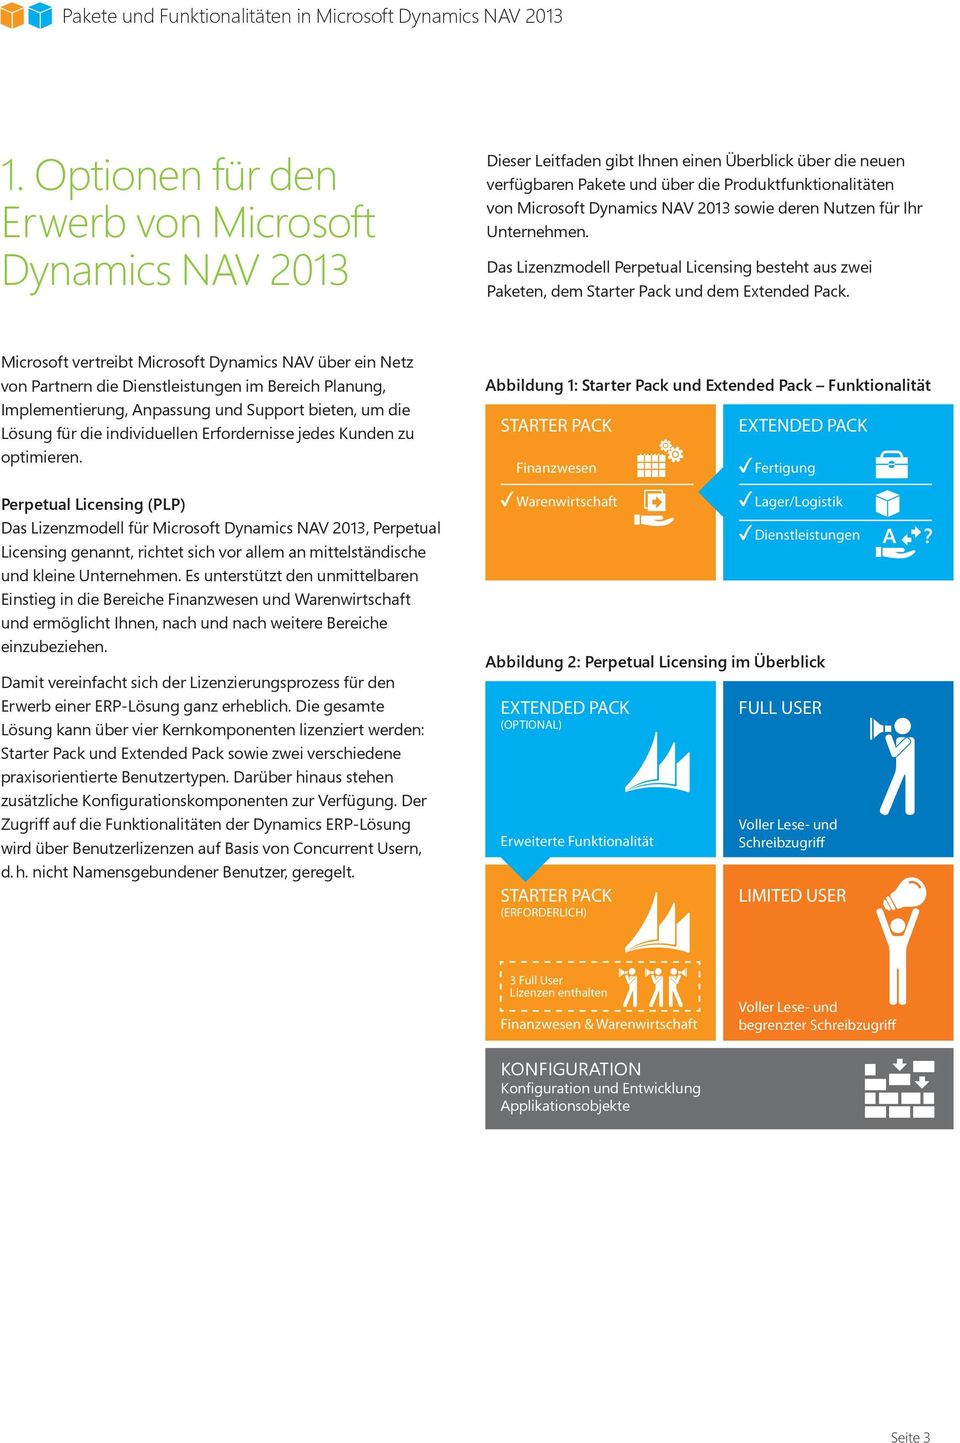 Microsoft vertreibt Microsoft Dynamics NAV über ein Netz von Partnern die Dienstleistungen im Bereich Planung, Implementierung, Anpassung und Support bieten, um die Lösung für die individuellen